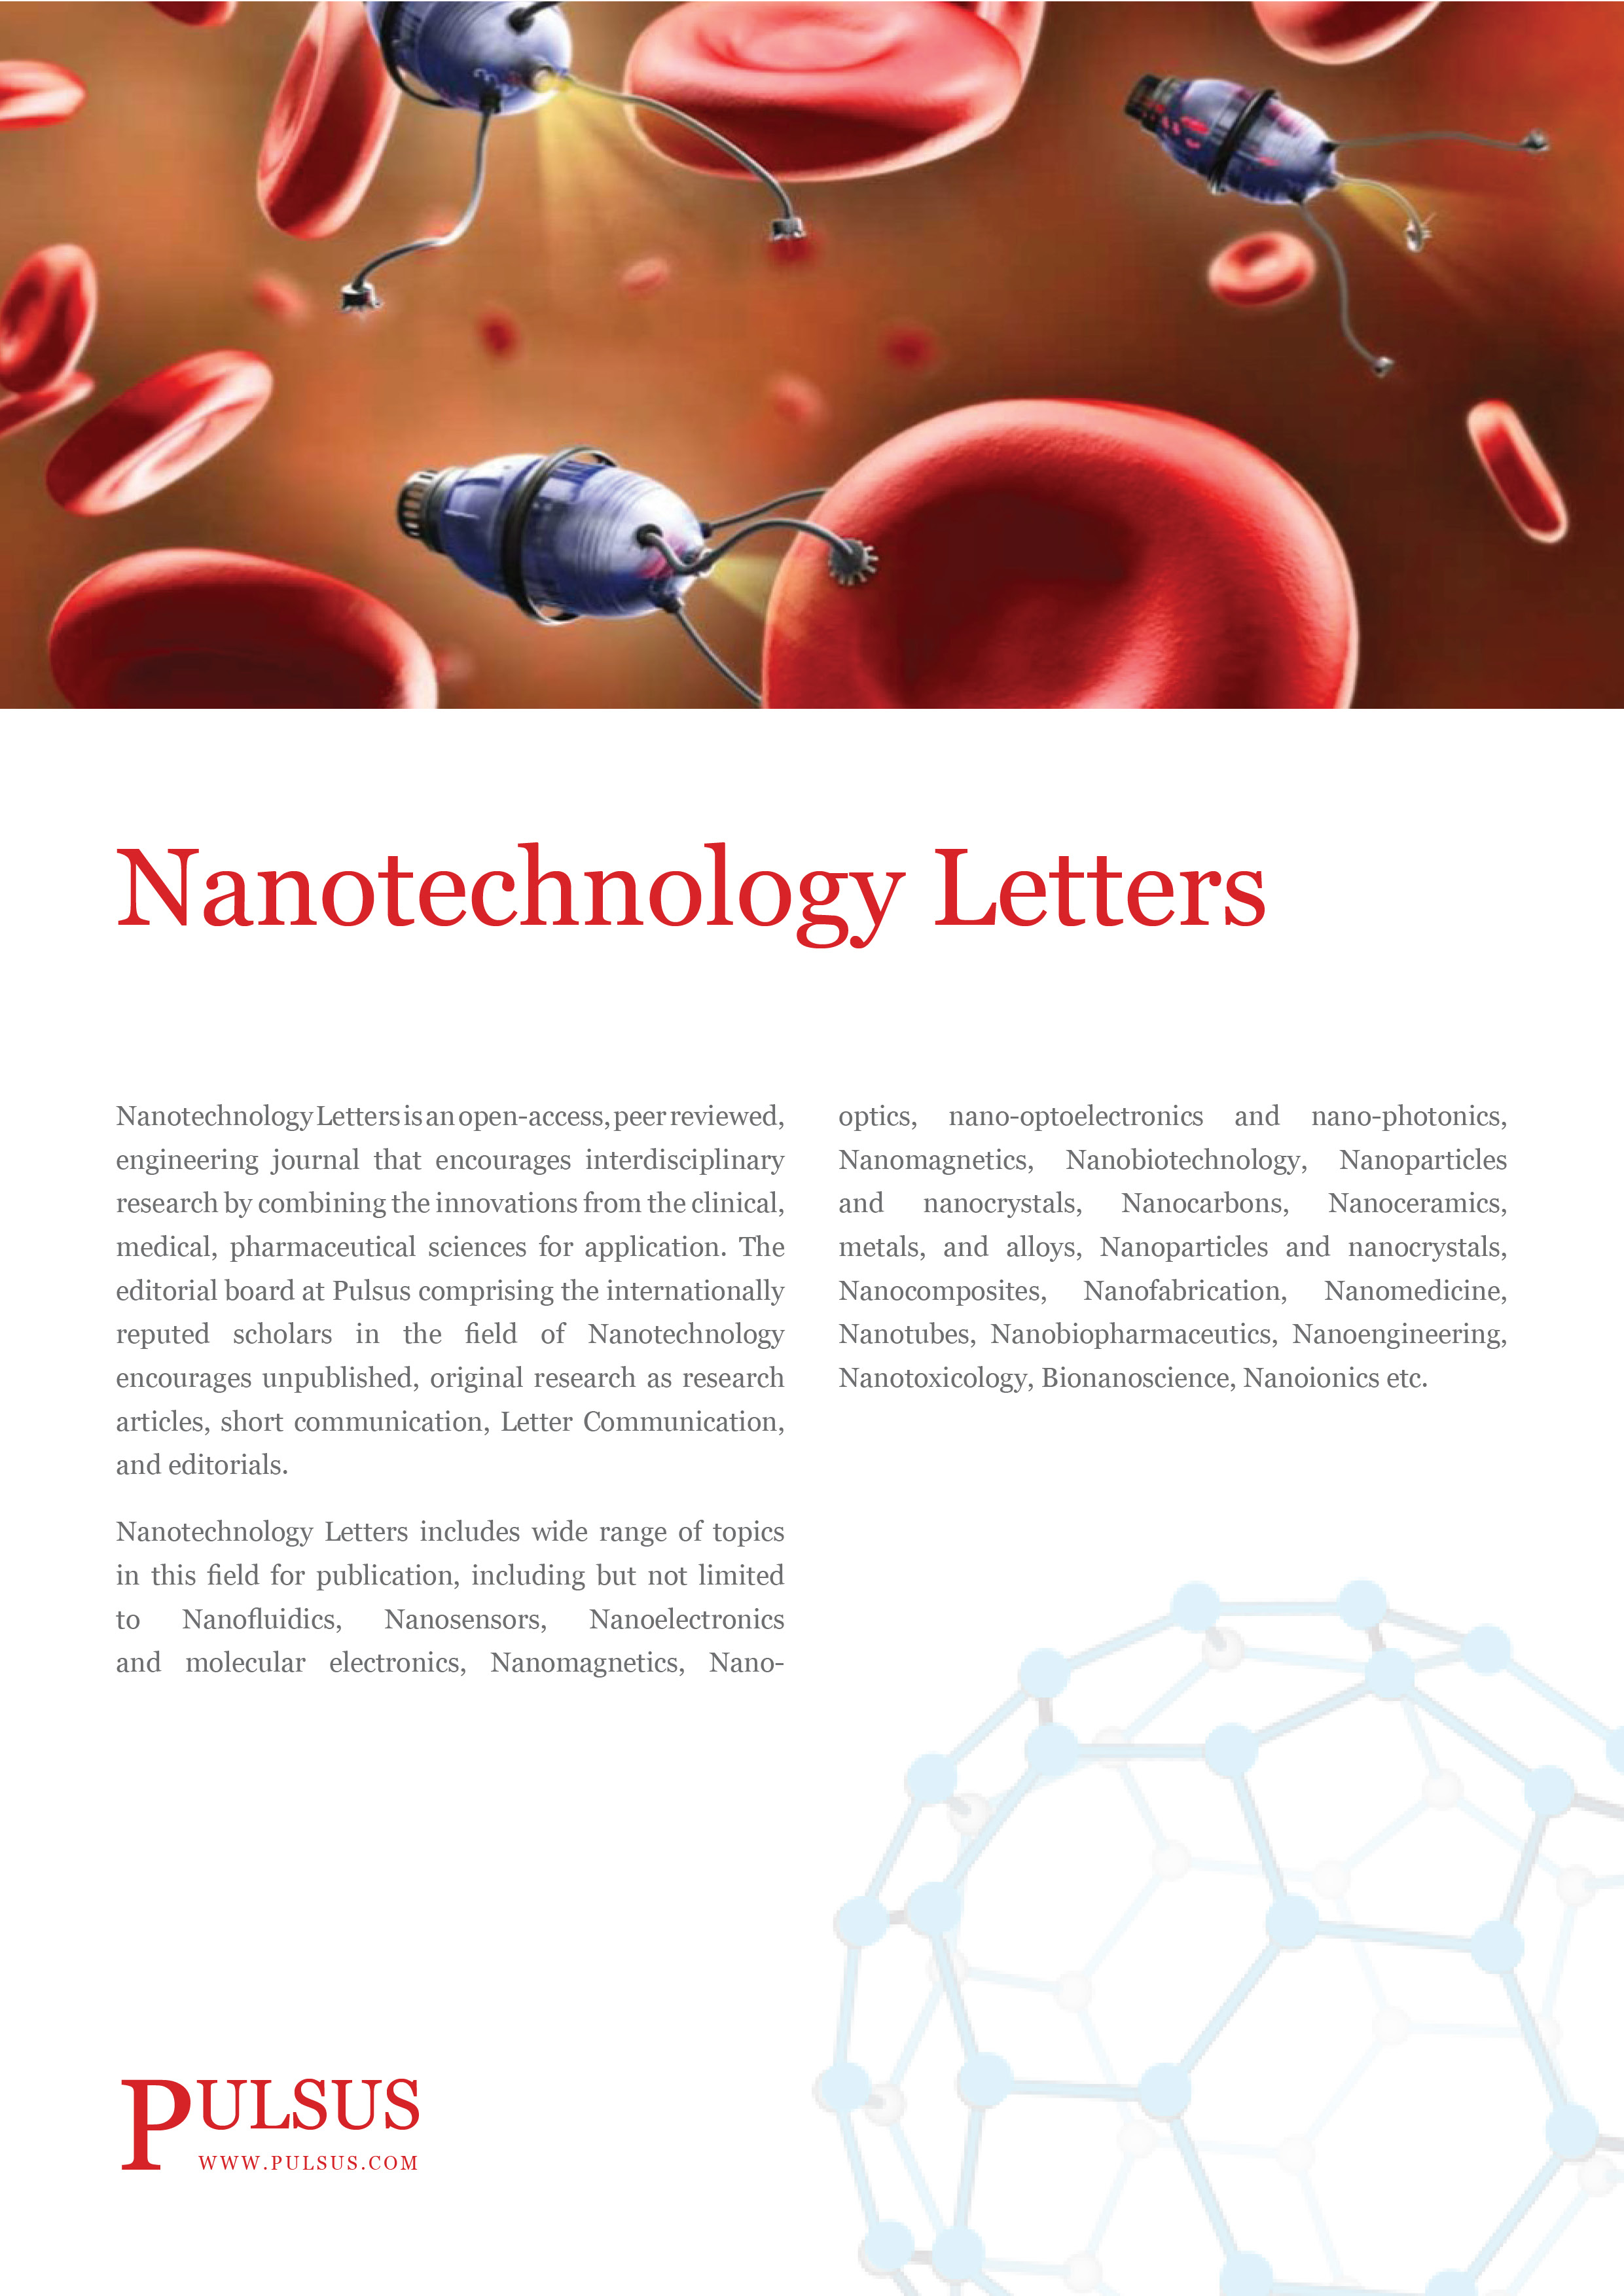 Письма о нанотехнологиях